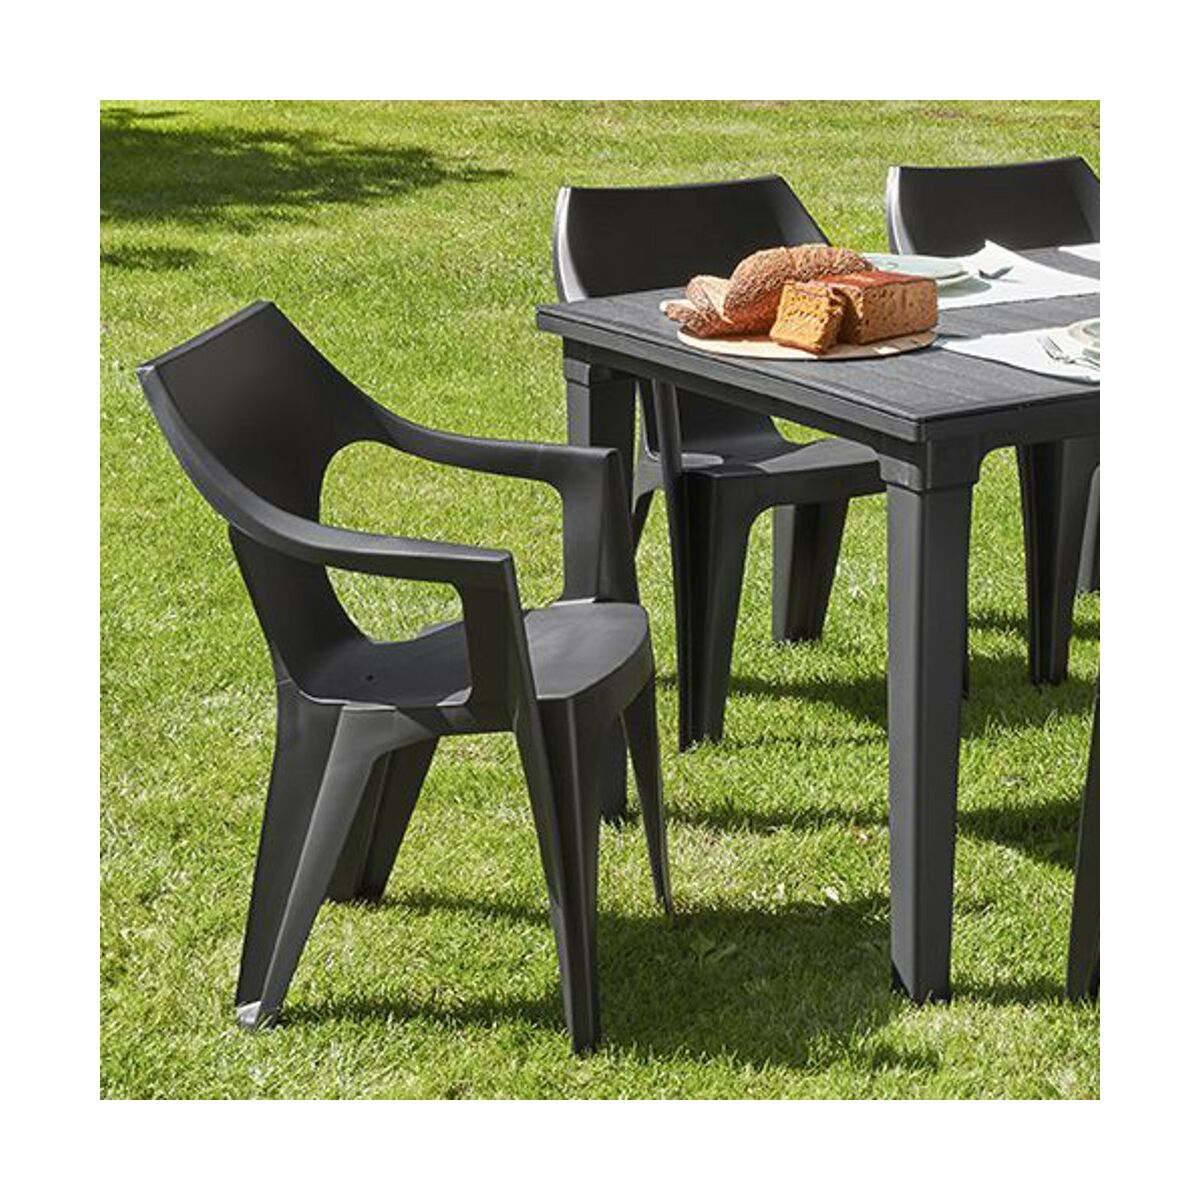 Krzeslo Ogrodowe Dante Plastikowe Antracytowe Krzesla Fotele Lawki Ogrodowe W Atrakcyjnej Cenie W Sklepach Leroy Merlin